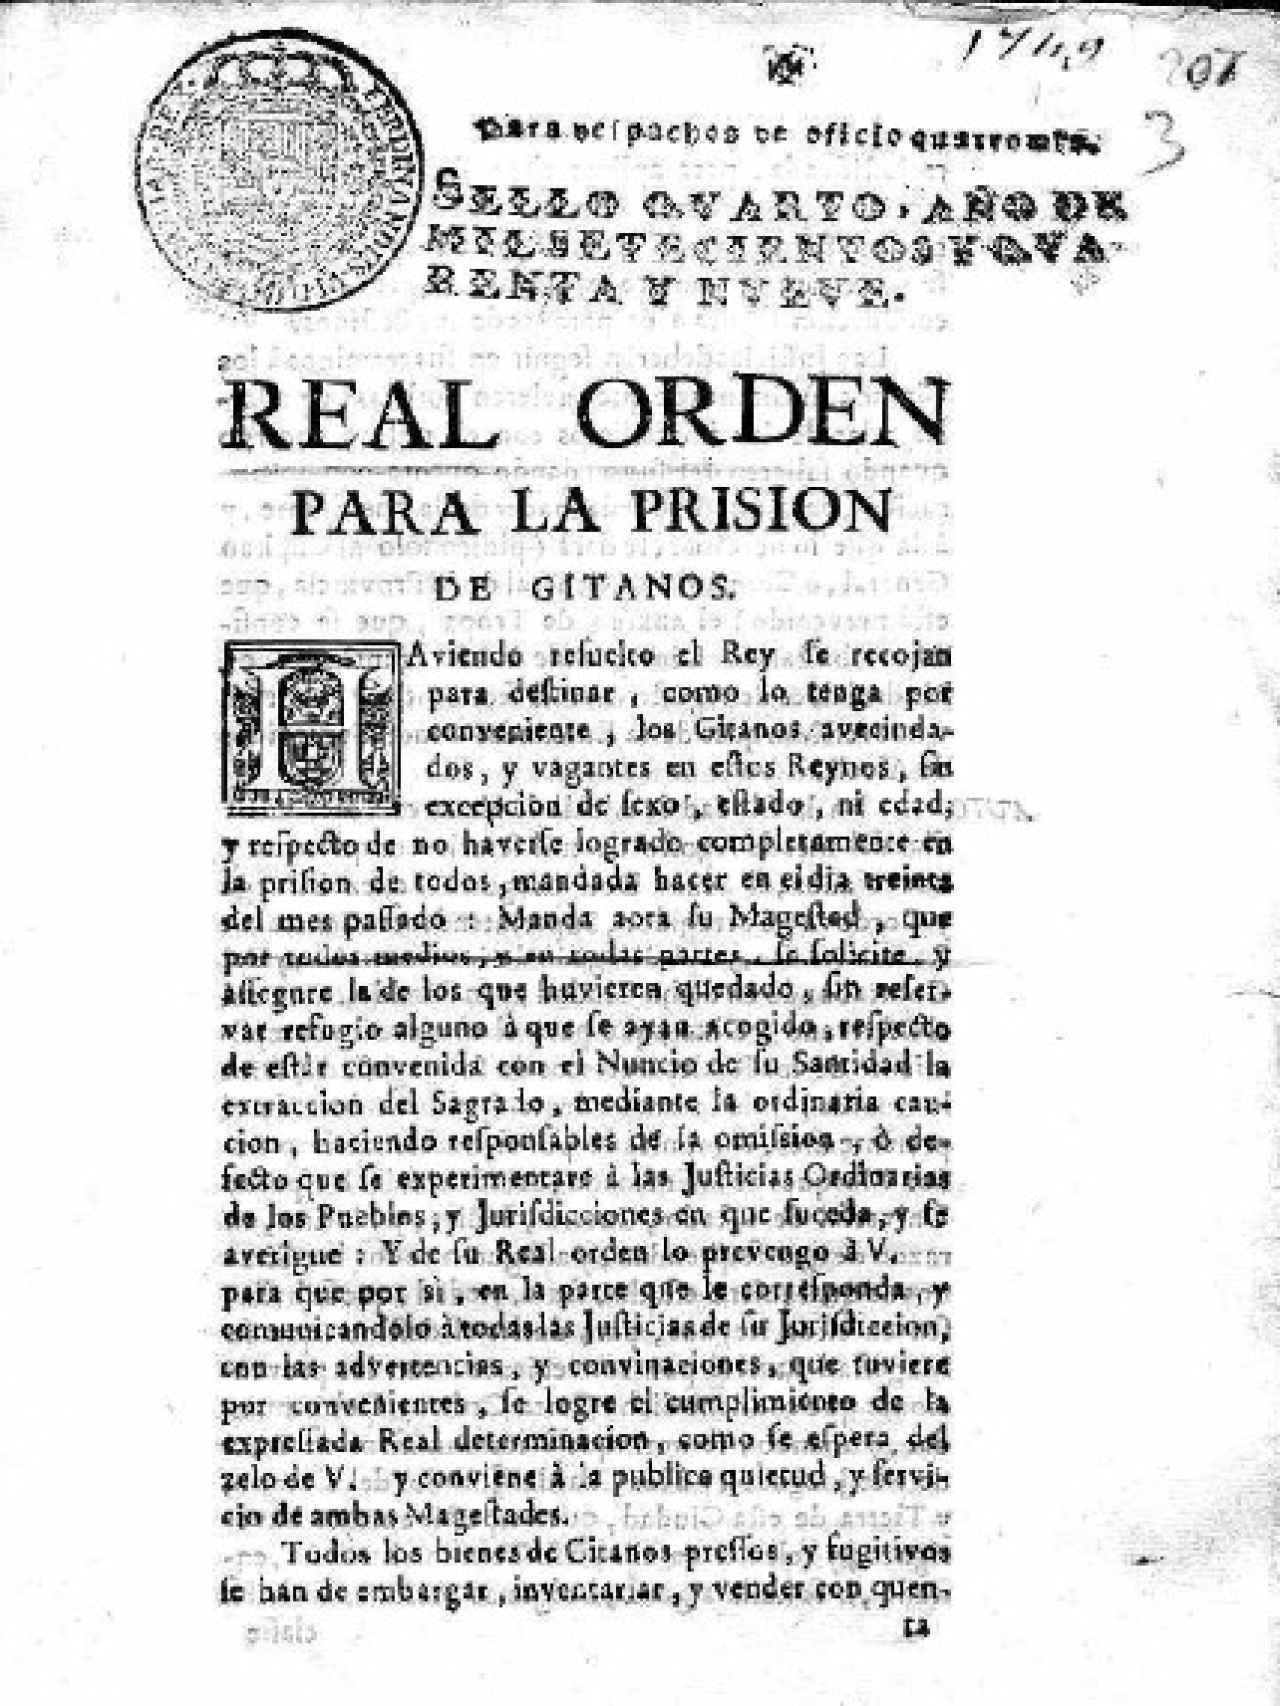 Real Orden para la prisión de los gitanos en 1749.